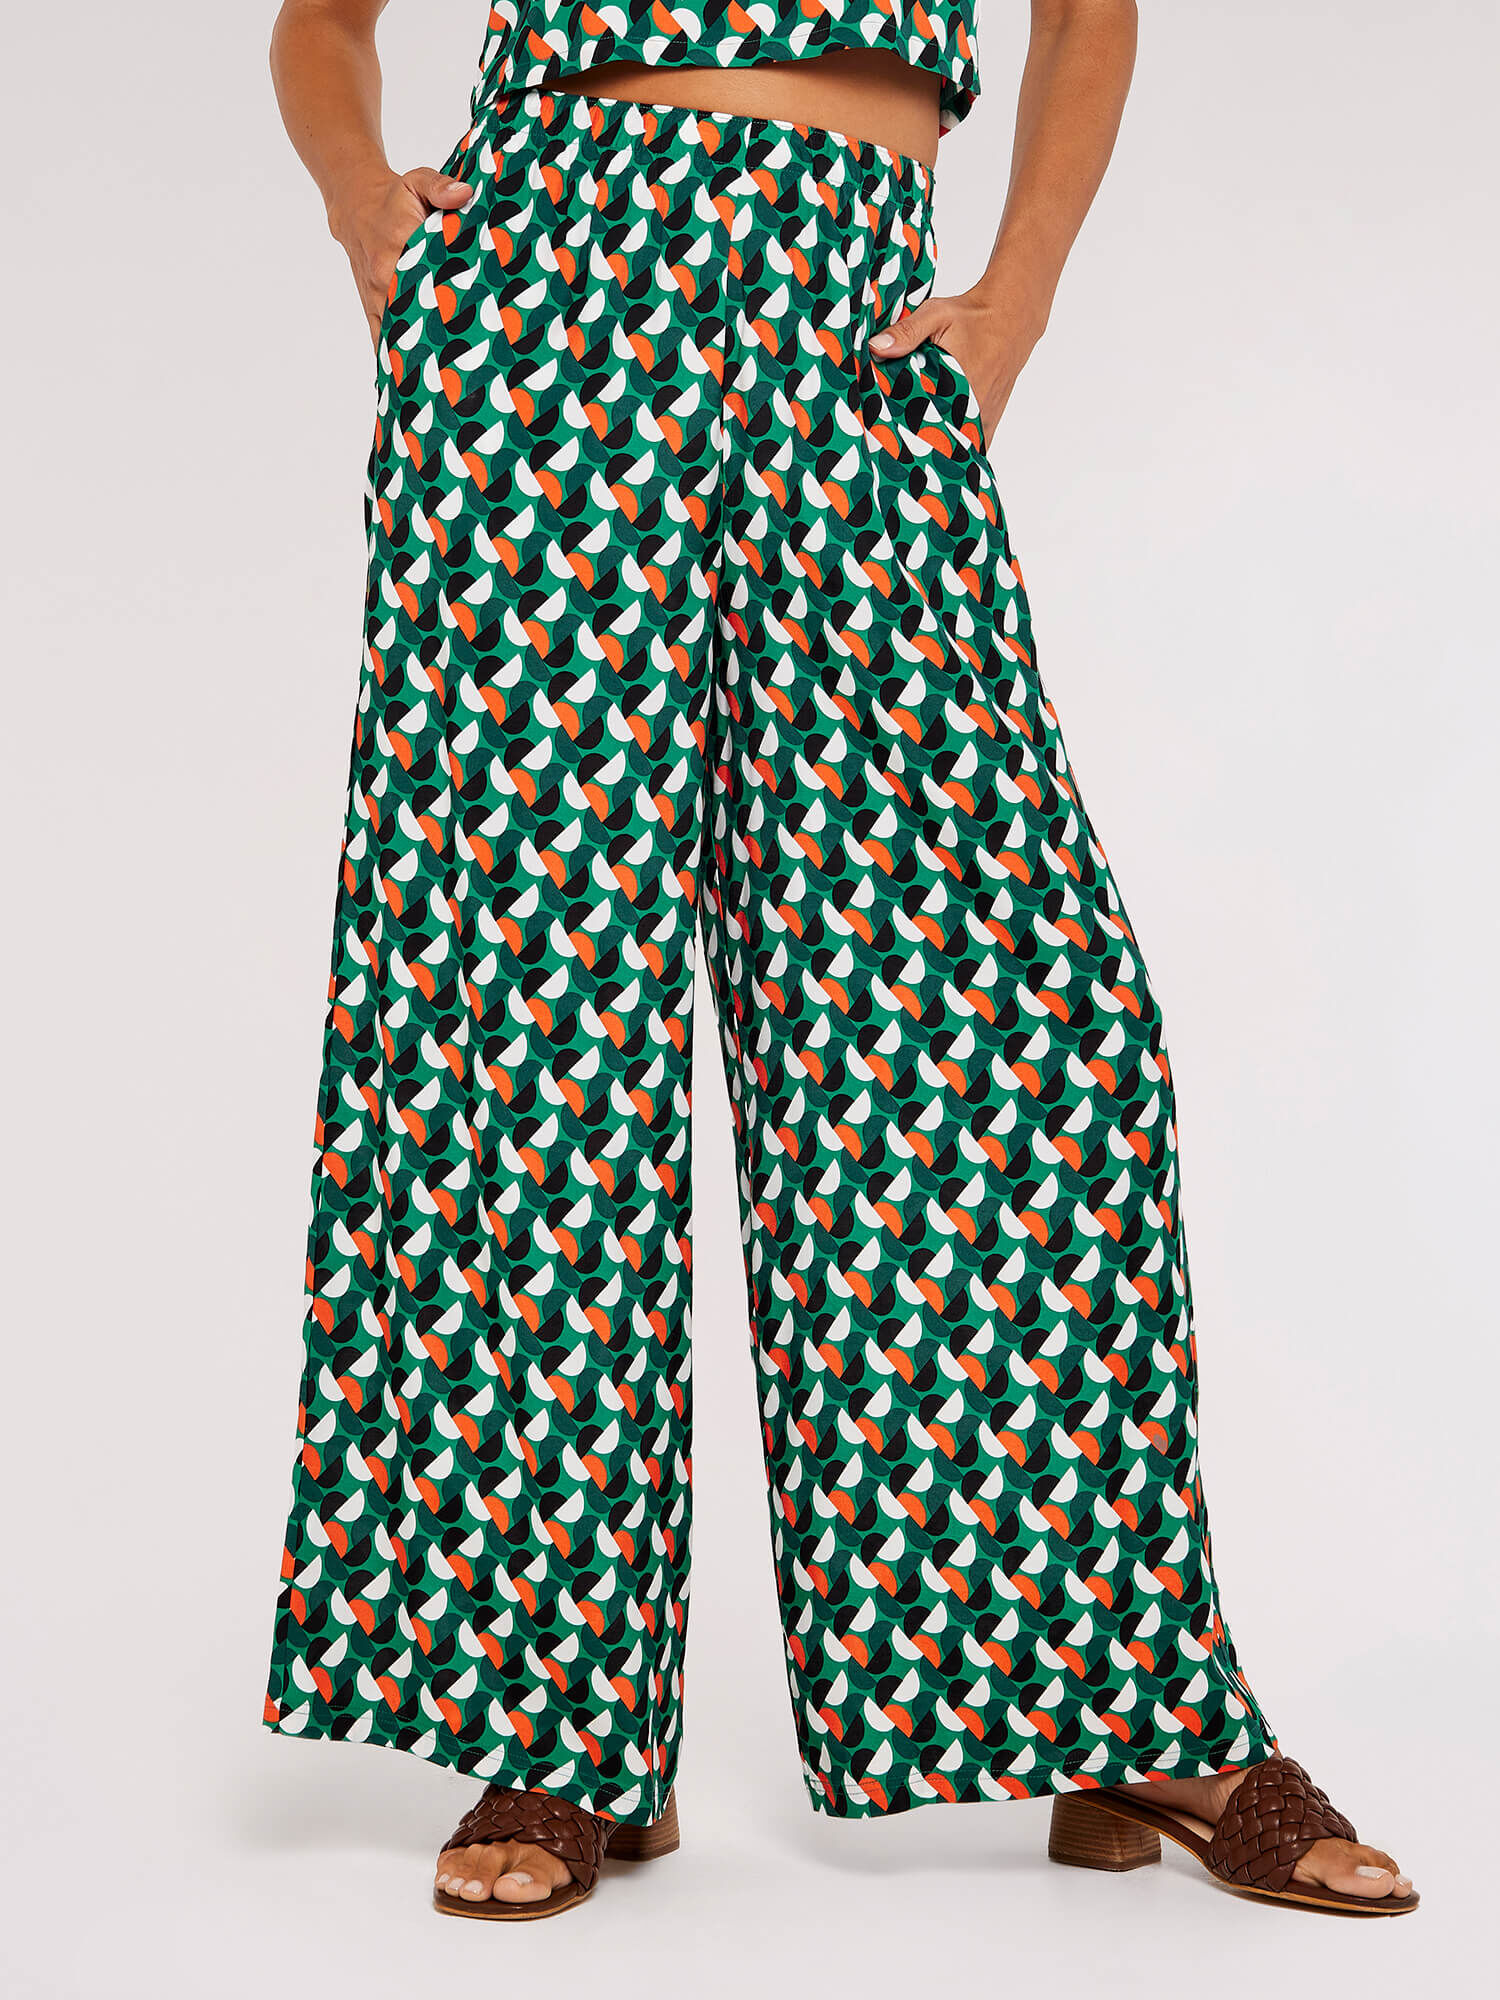 Bespoke Printed Trousers Custom Printed Ladies Trousers